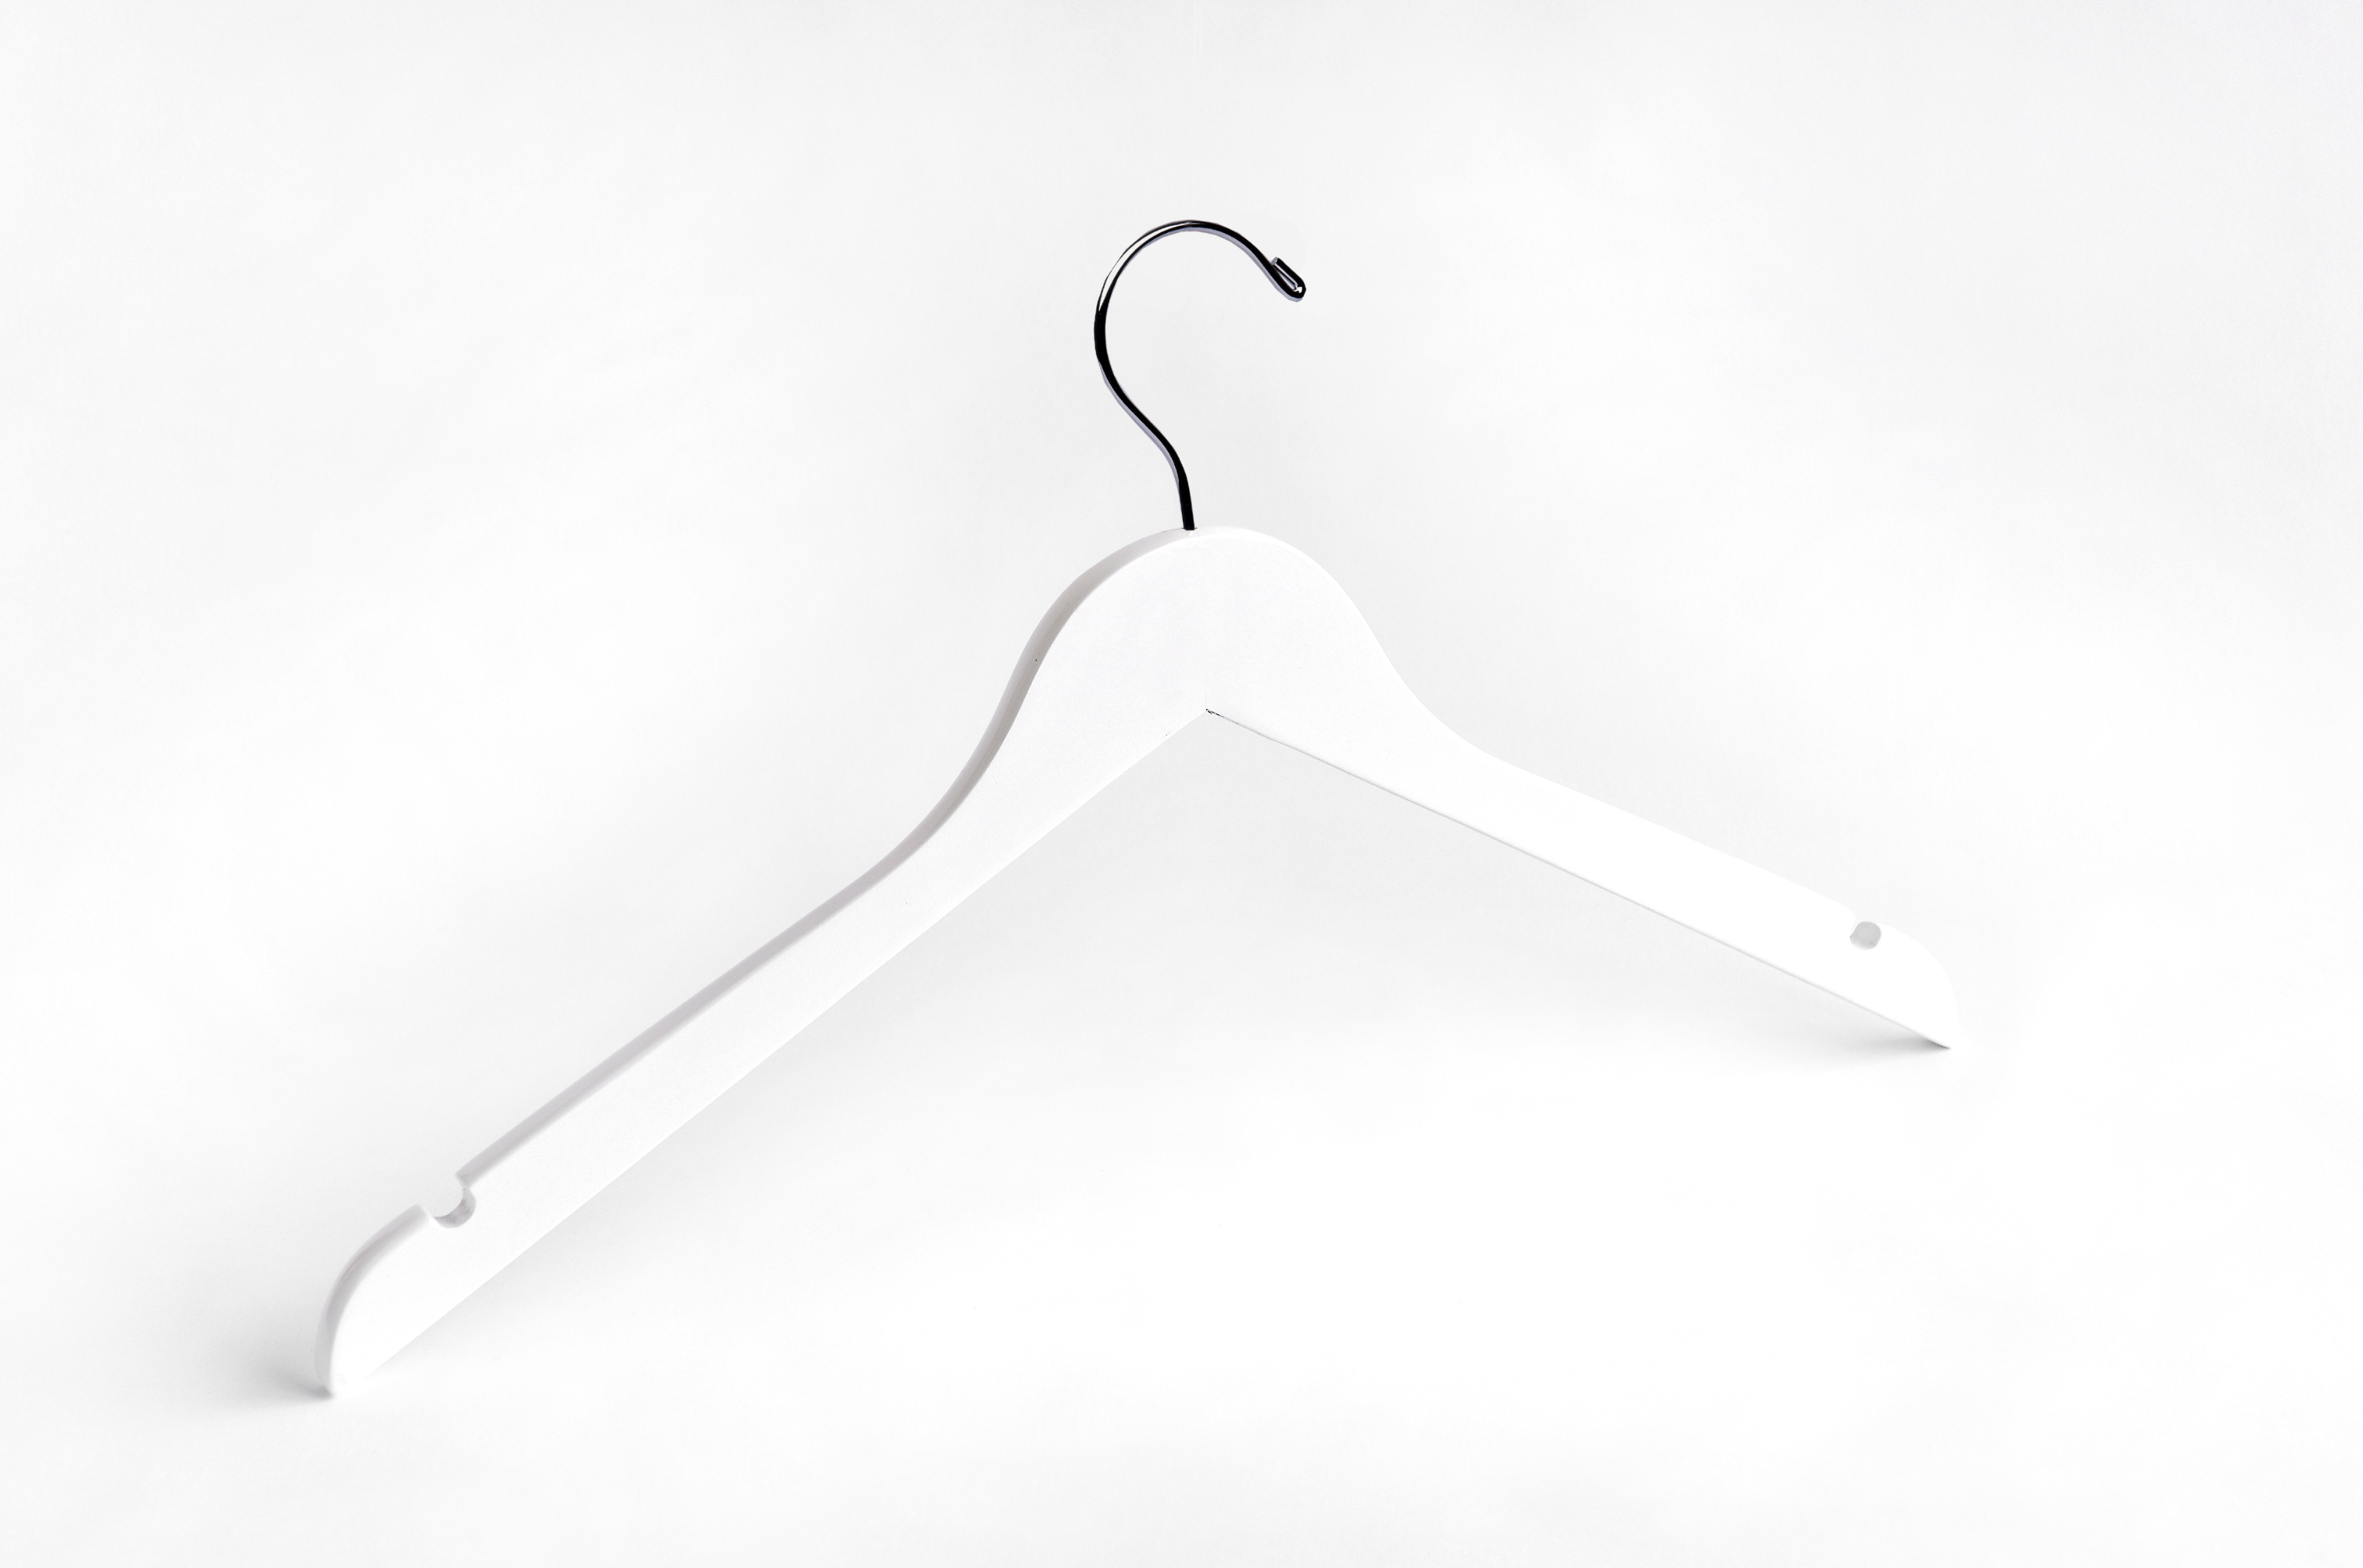 White Suit Hanger w/ Bar - Black & White Wood Hangers